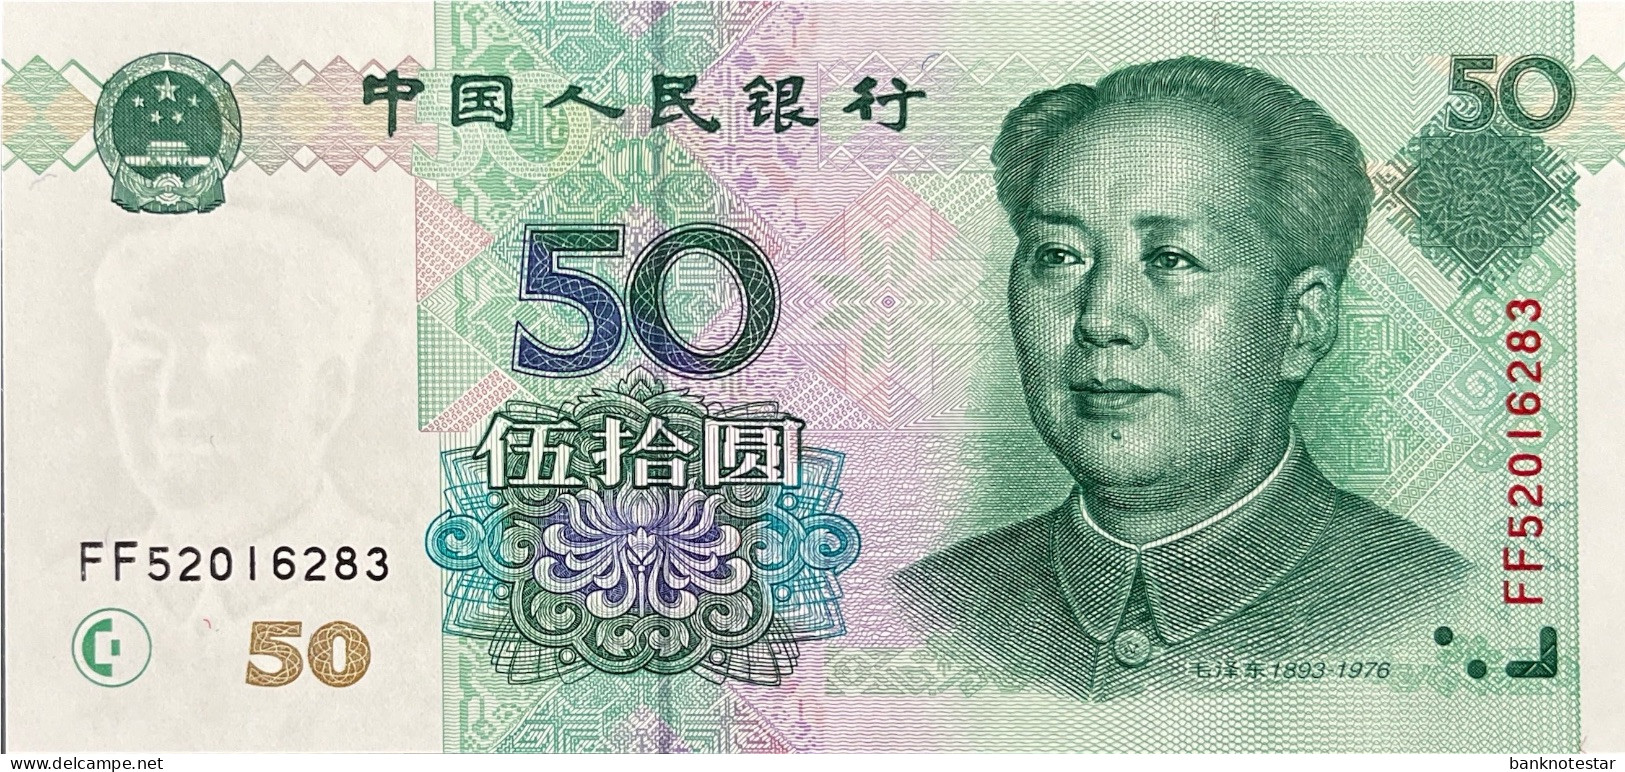 China 50 Yuan, P-900 (1999) - UNC - China